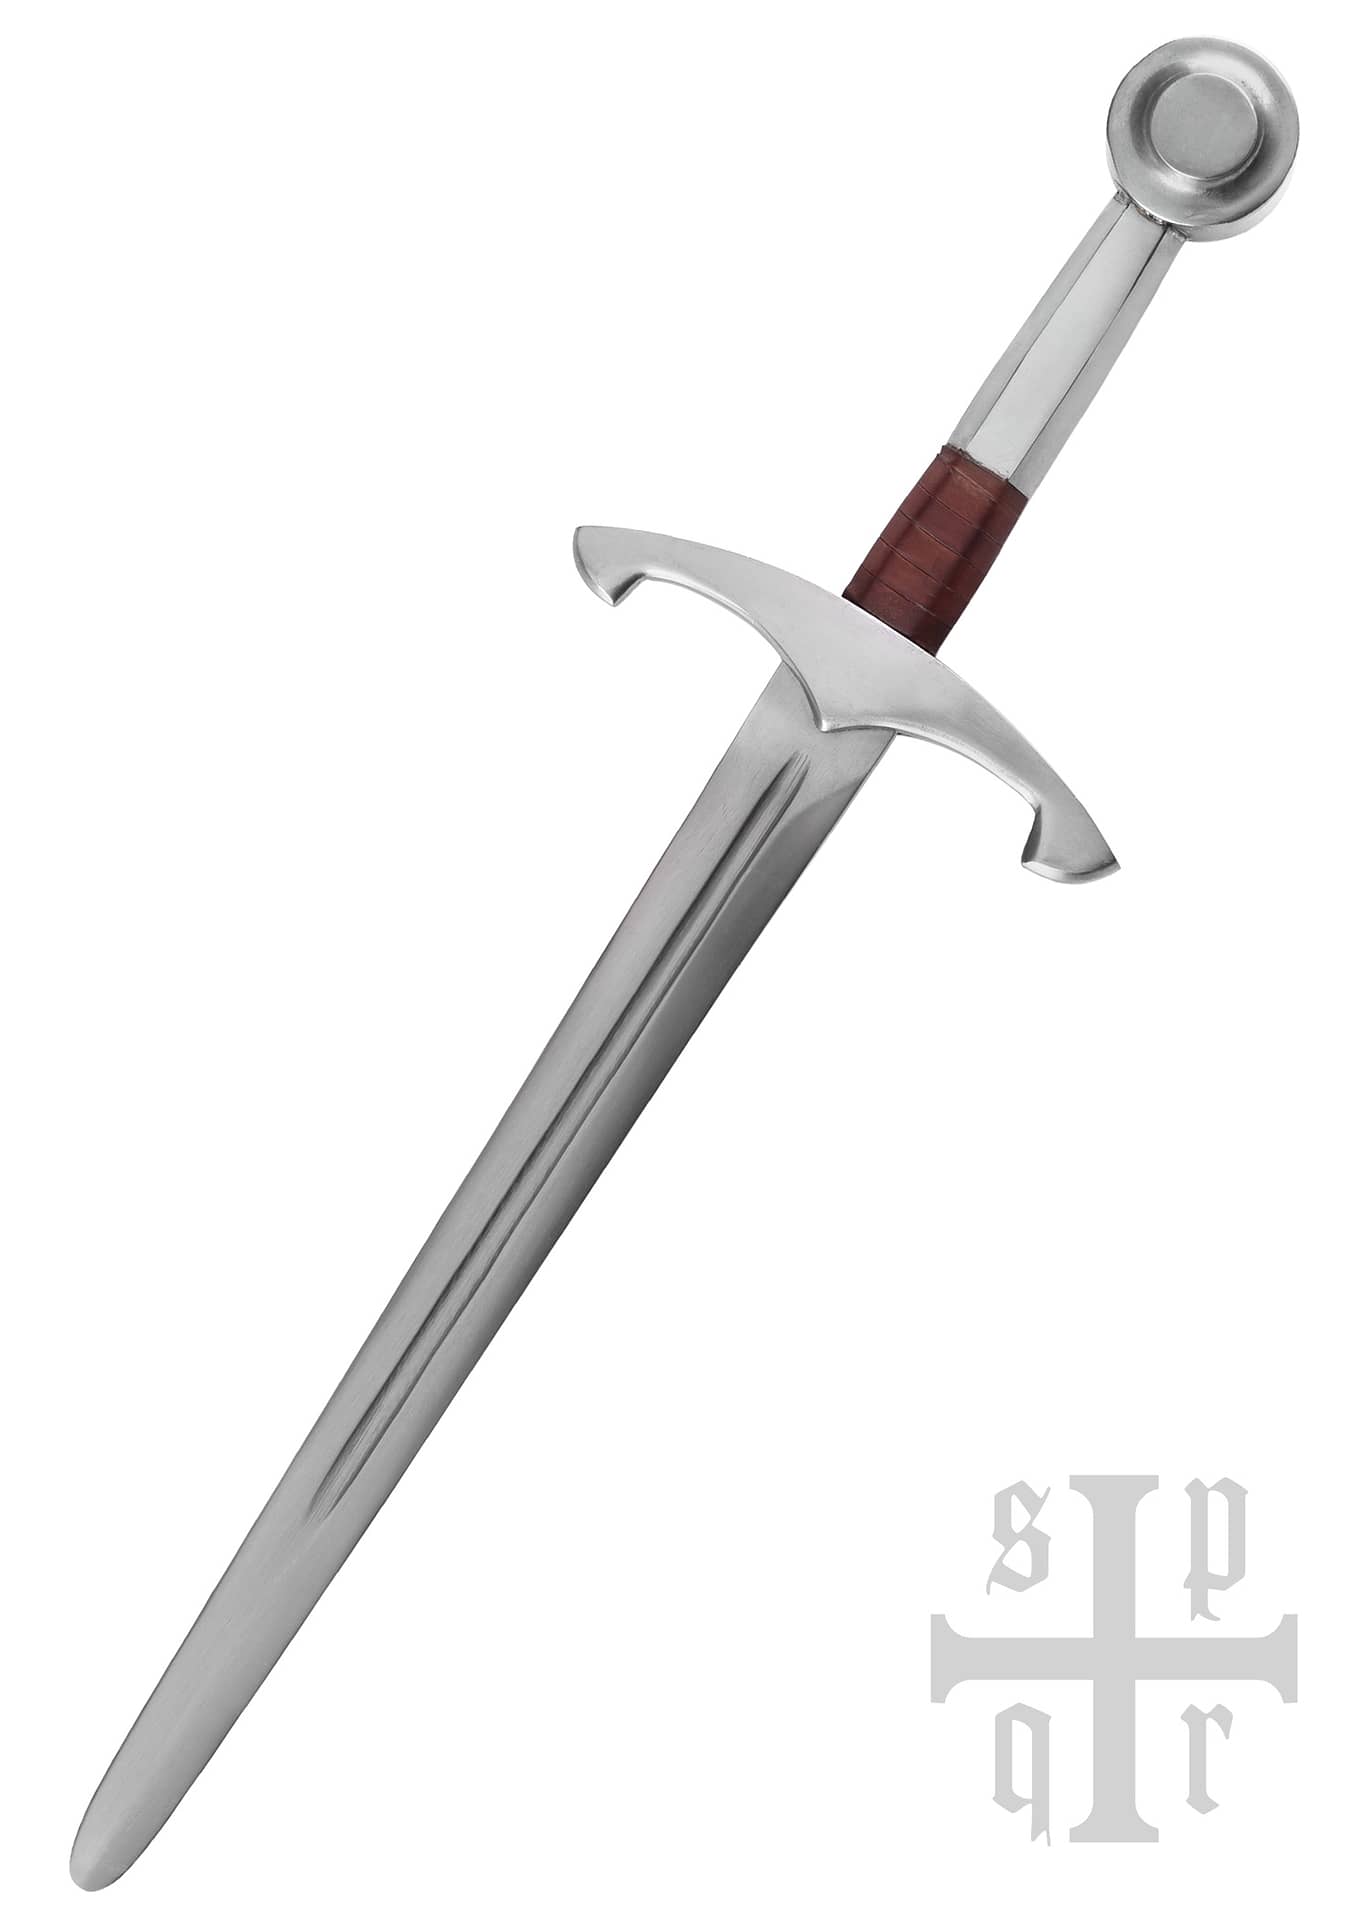 Daga medieval, roma 0264000127 - Espadas y Más